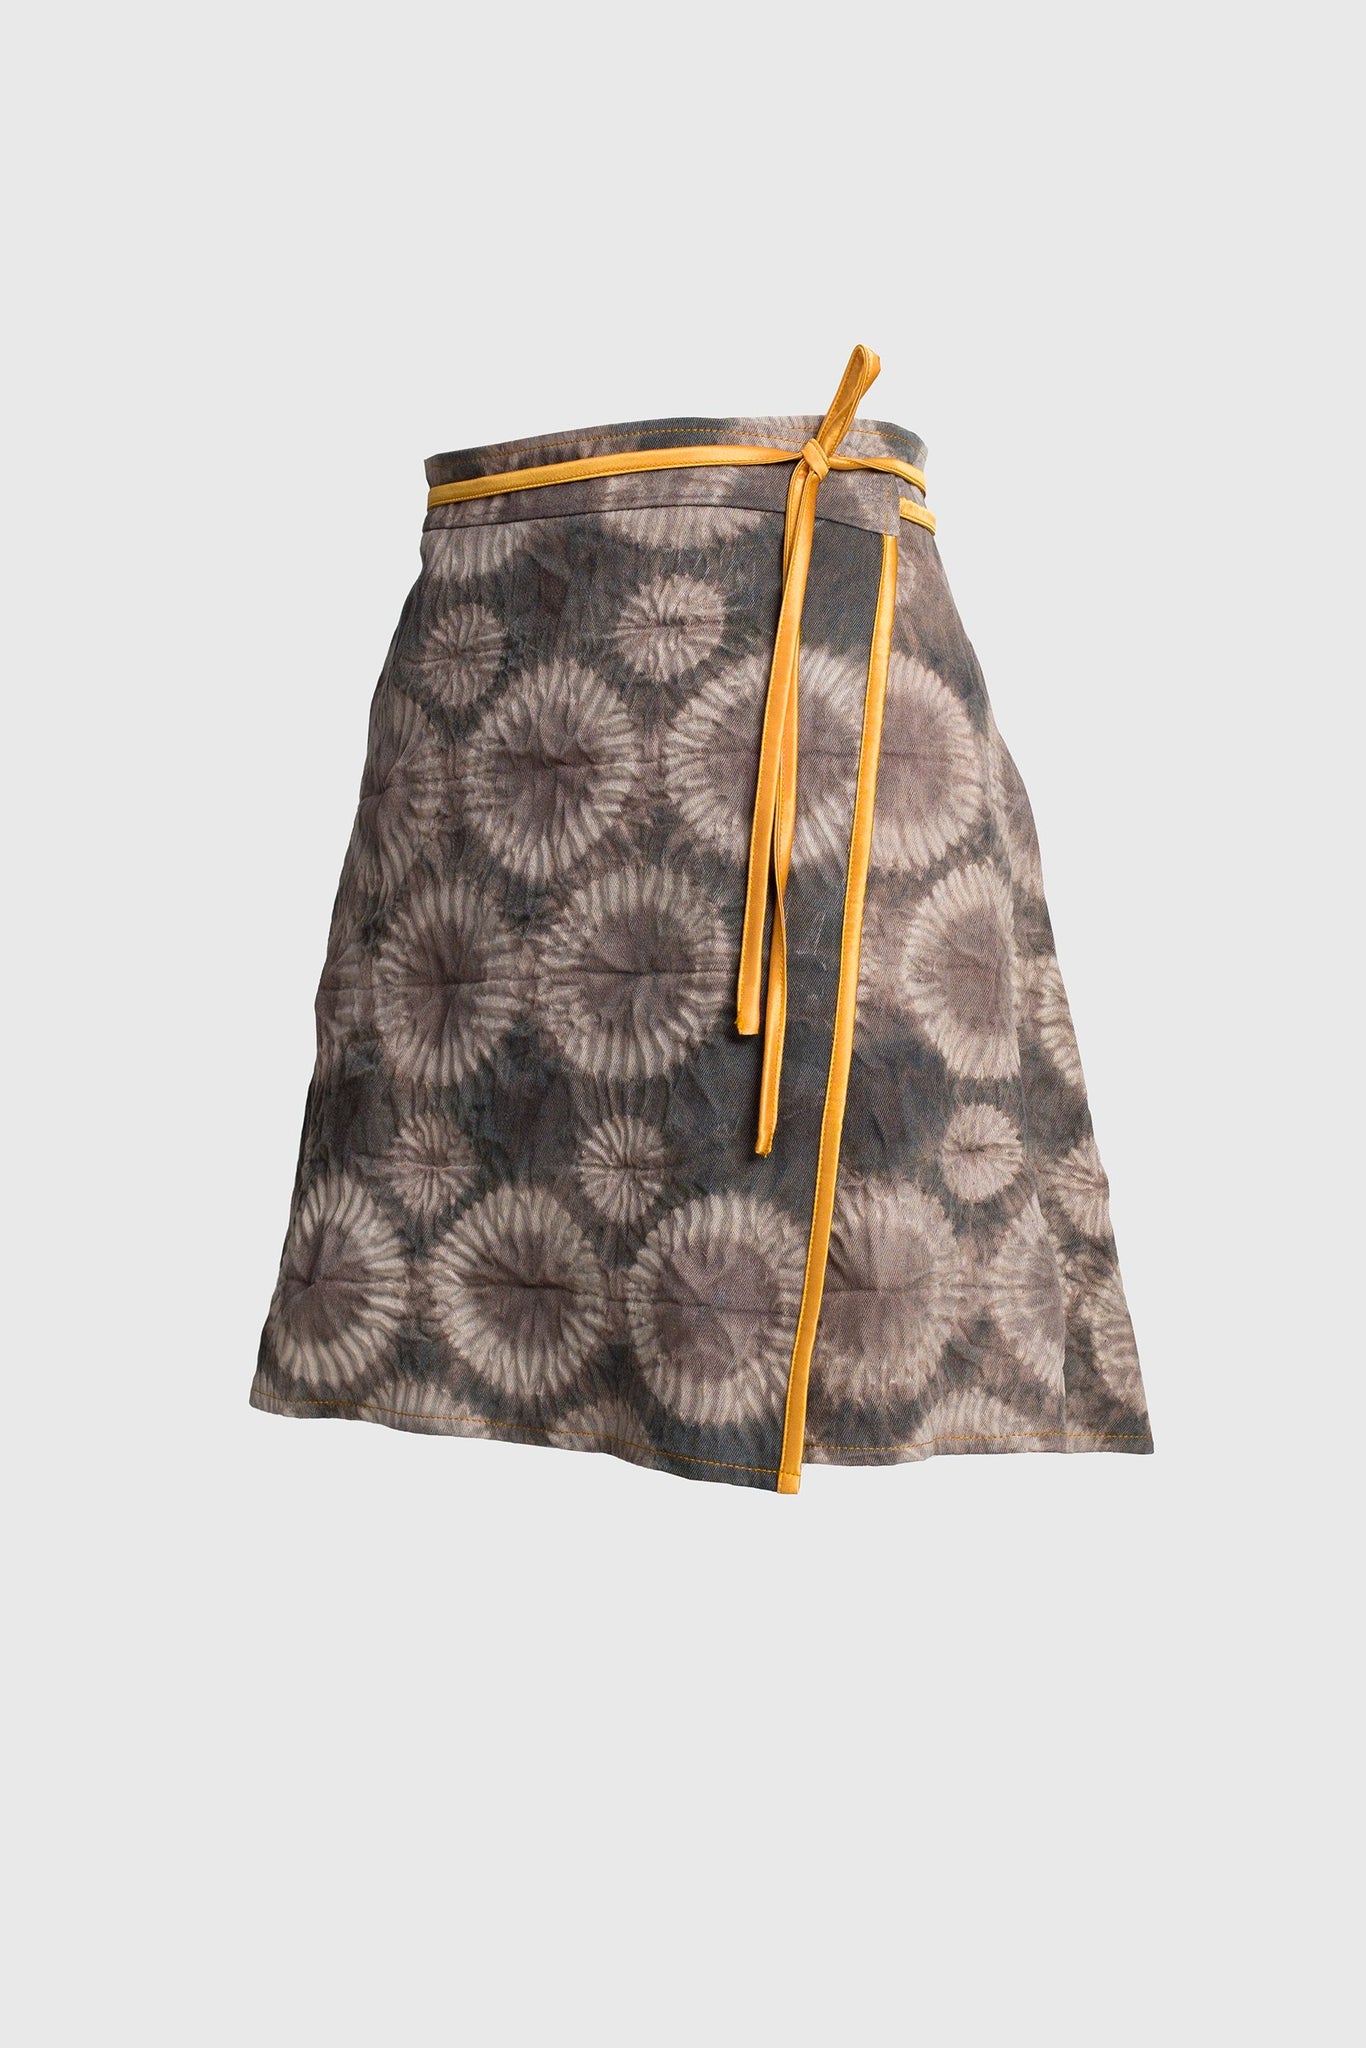 Shibori Wrap Skirt - Brown and Blue